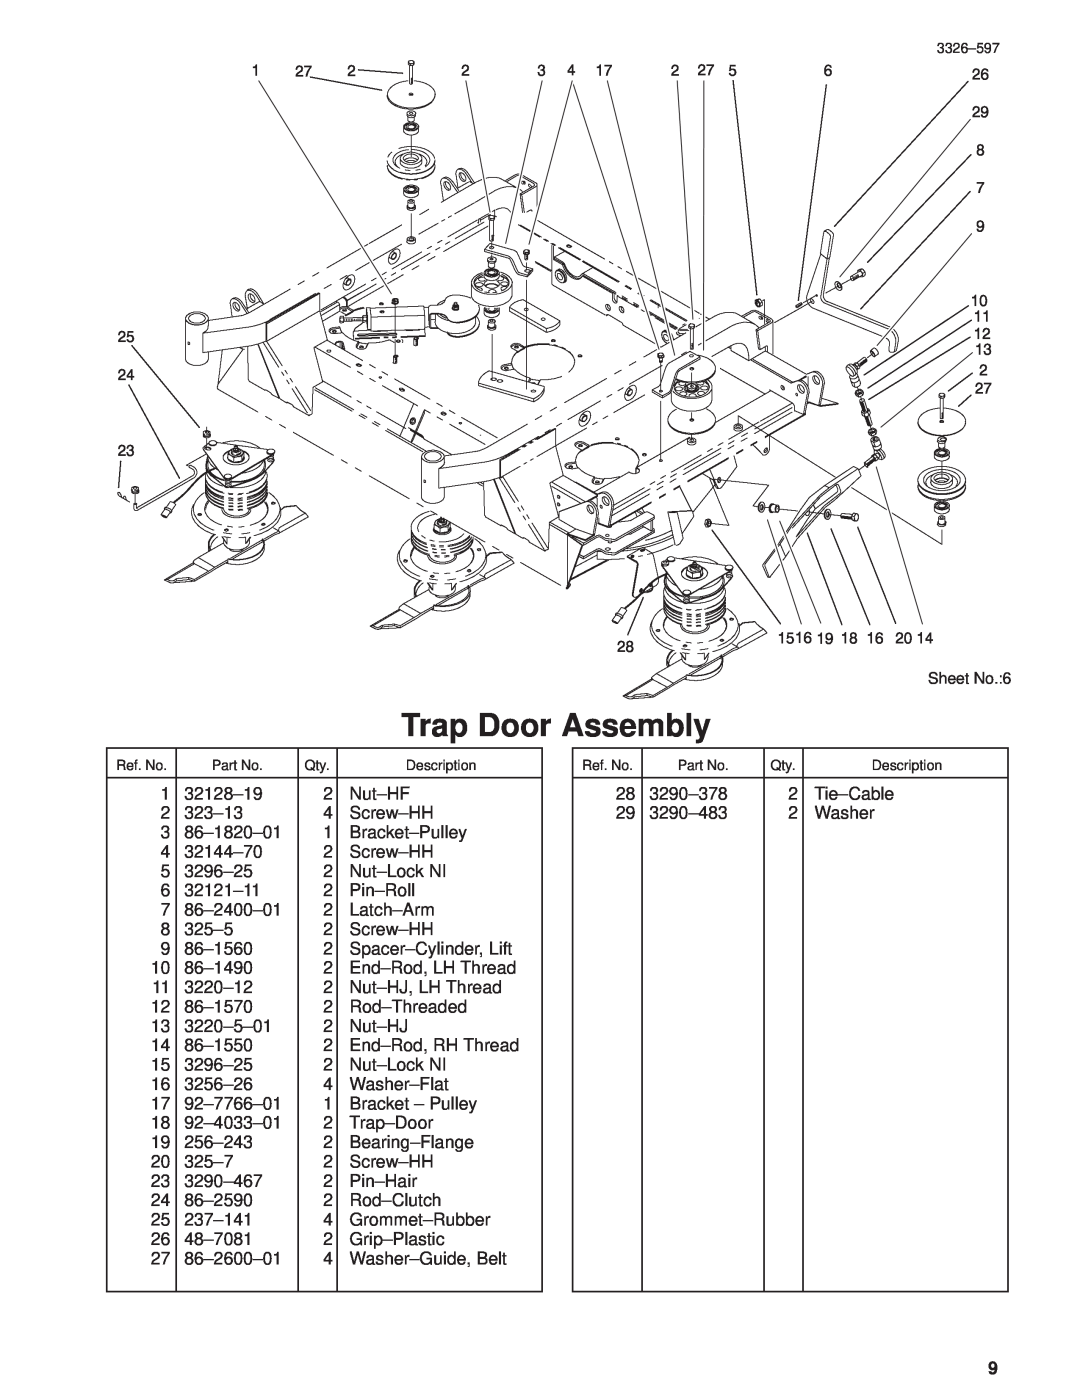 Toro 30402210000001 and Up manual Trap Door Assembly, Sheet No.6 